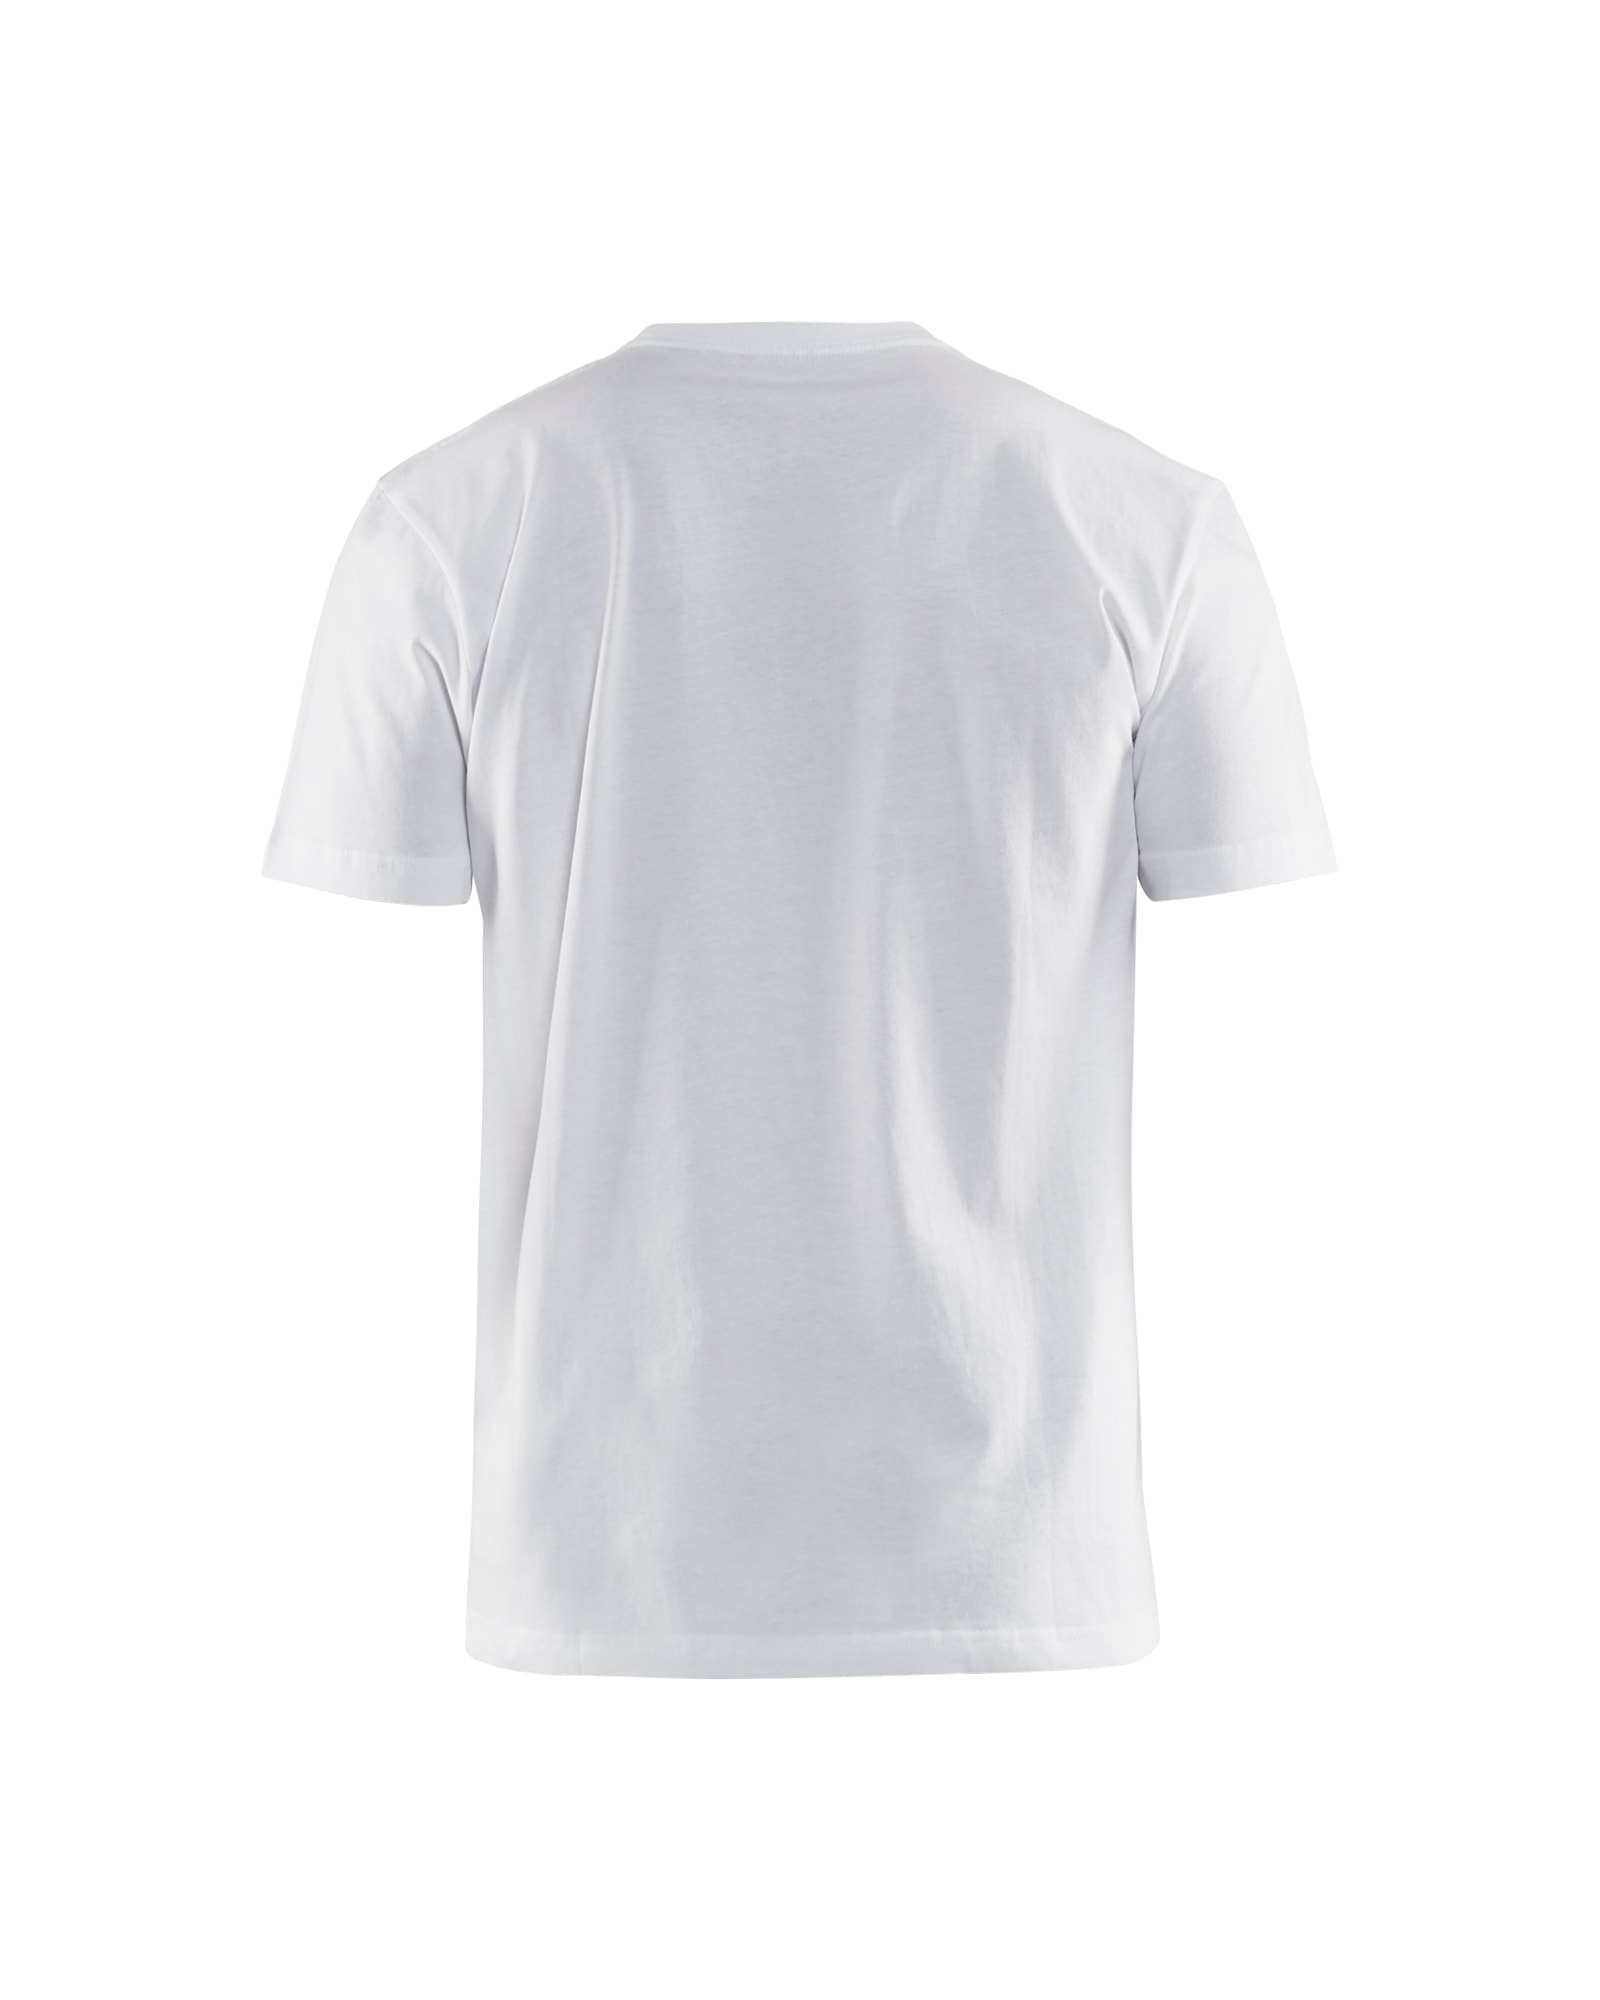 3379 1042 Blakläder T-Shirt, in 14 Farbkombinationen erhältlich, Kollektion UNITE (Auslaufender Artikel. Nur noch verfügbar solange der Vorrat reicht).